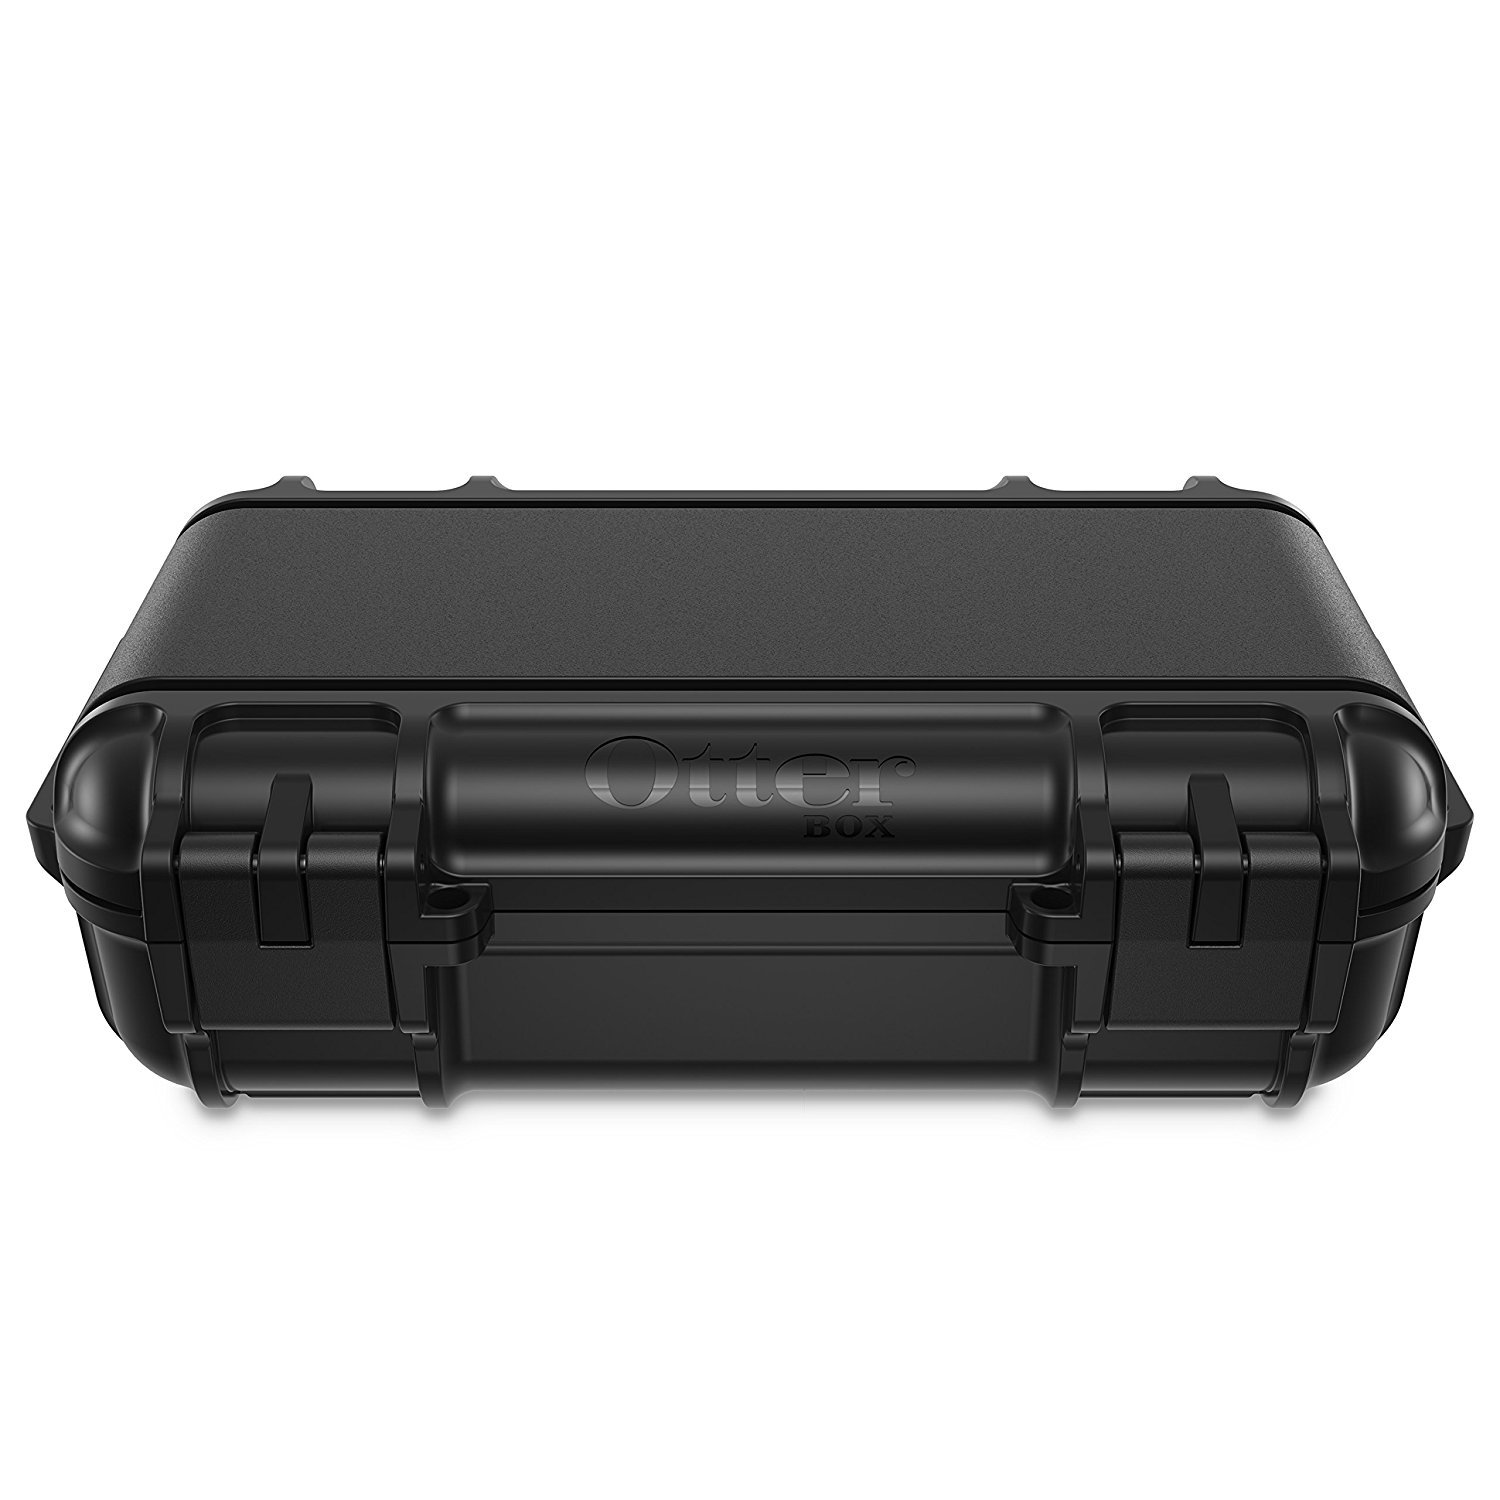 OtterBox 3250 Series 0.9 Liter Small Lockable Waterproof Storage Drybox, Black - image 4 of 8